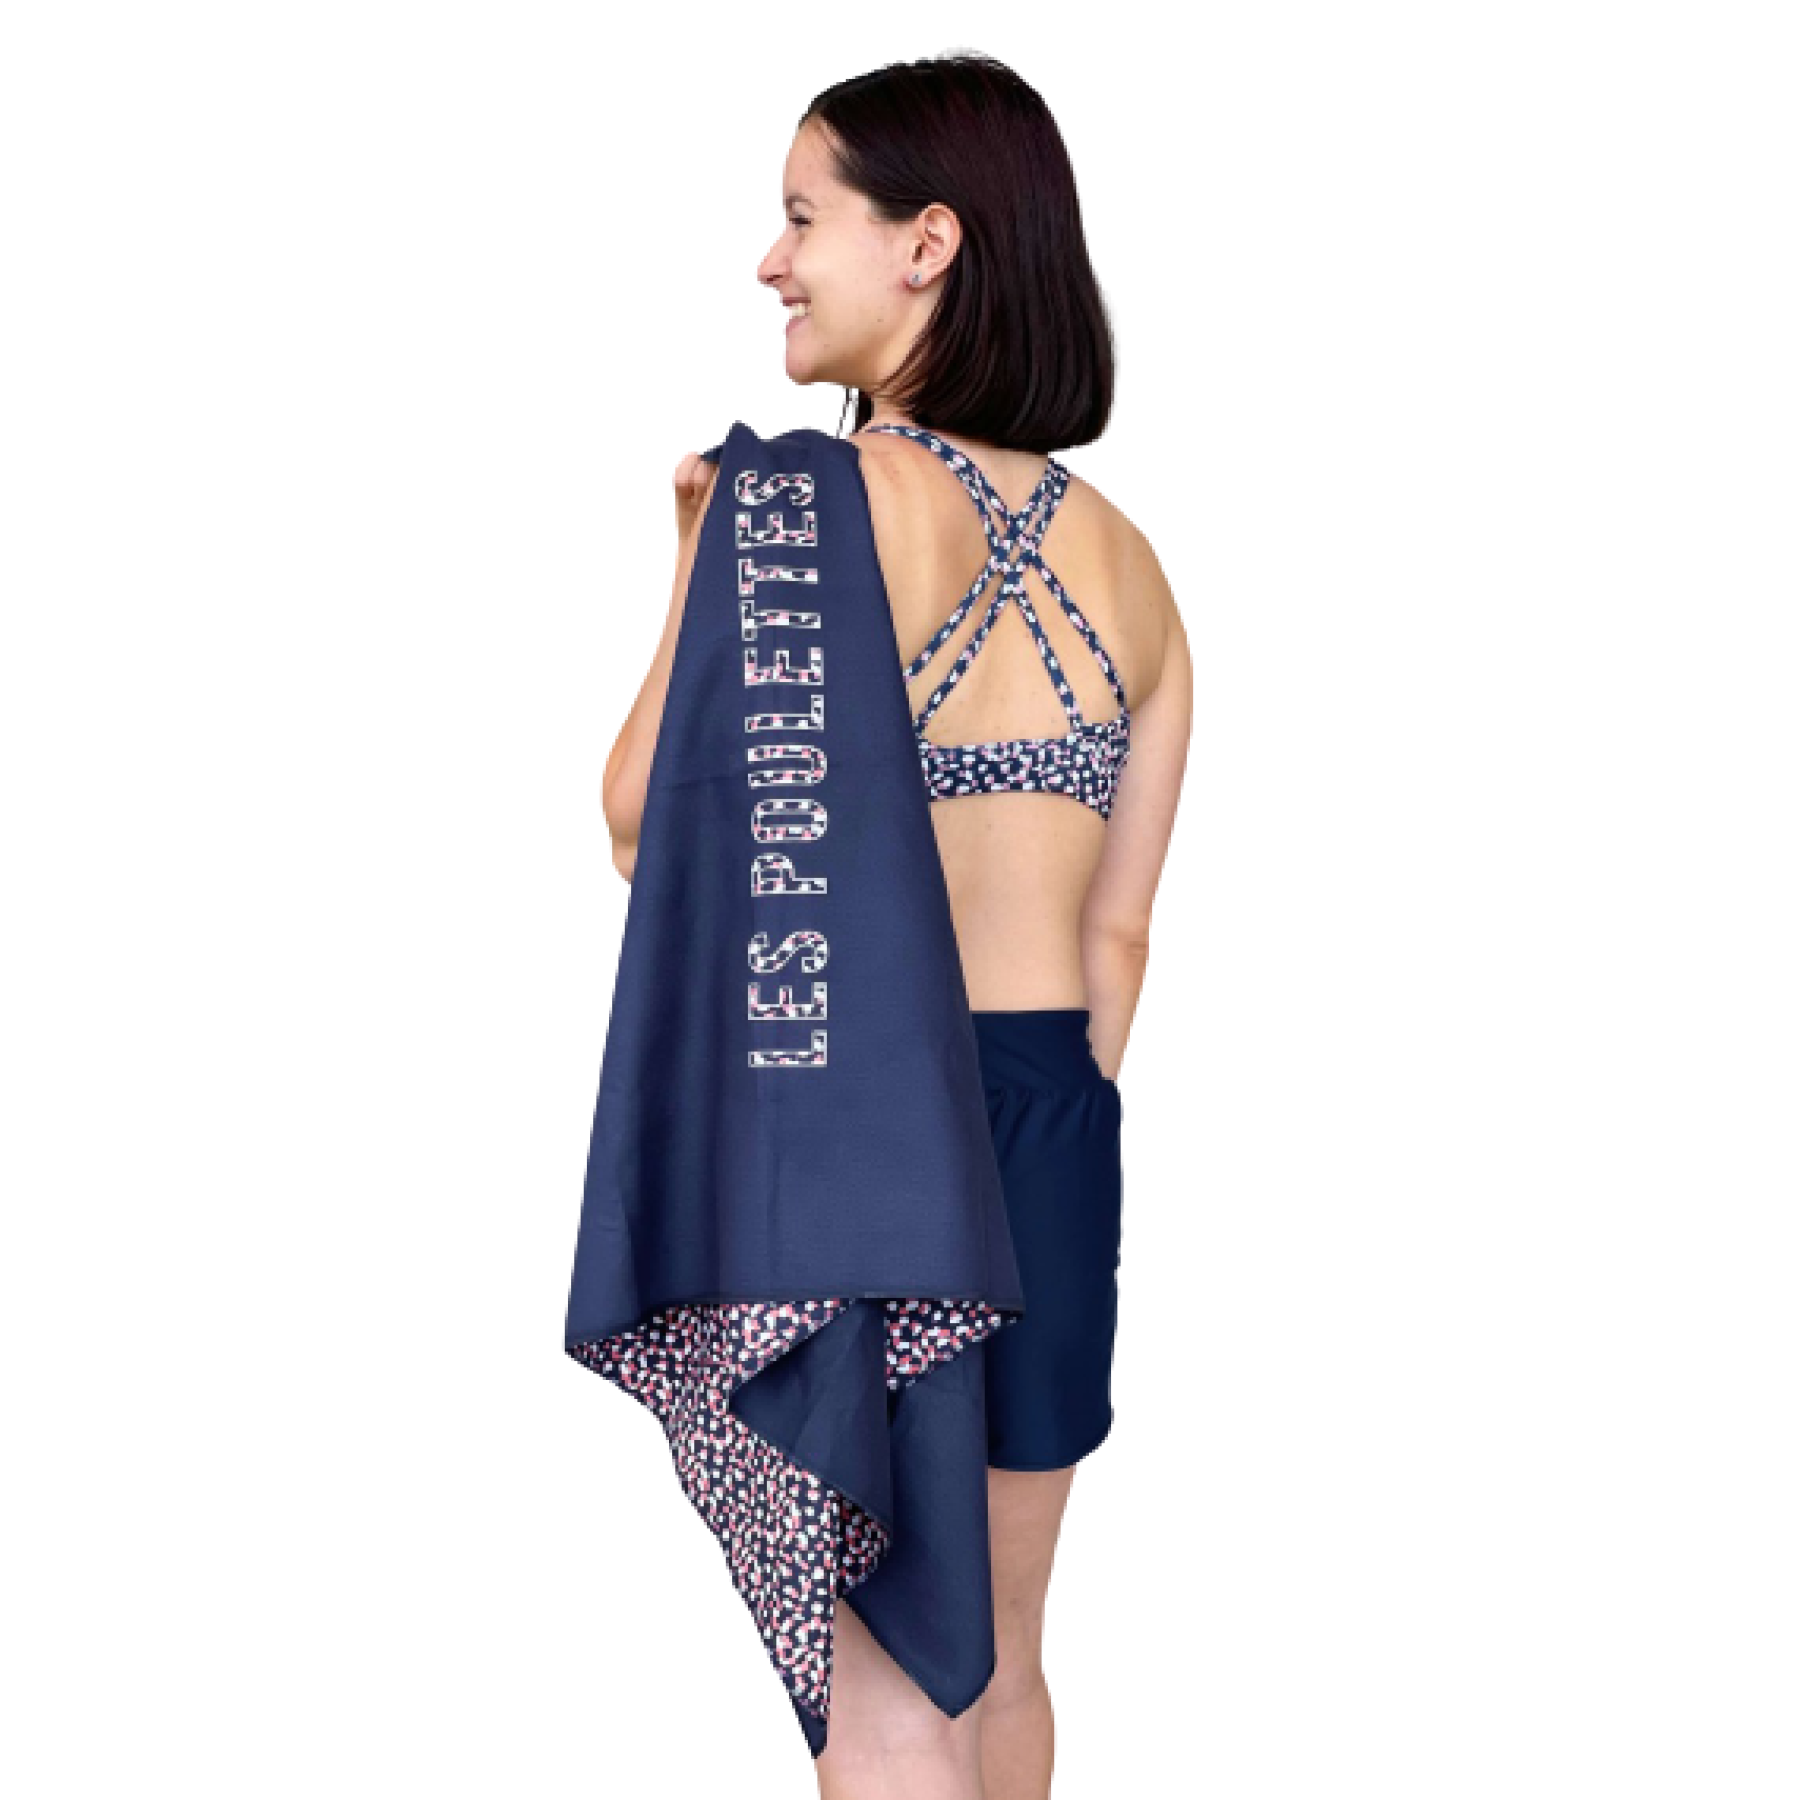 Women's microfiber towel Les Poulettes Fitness motif pois xl